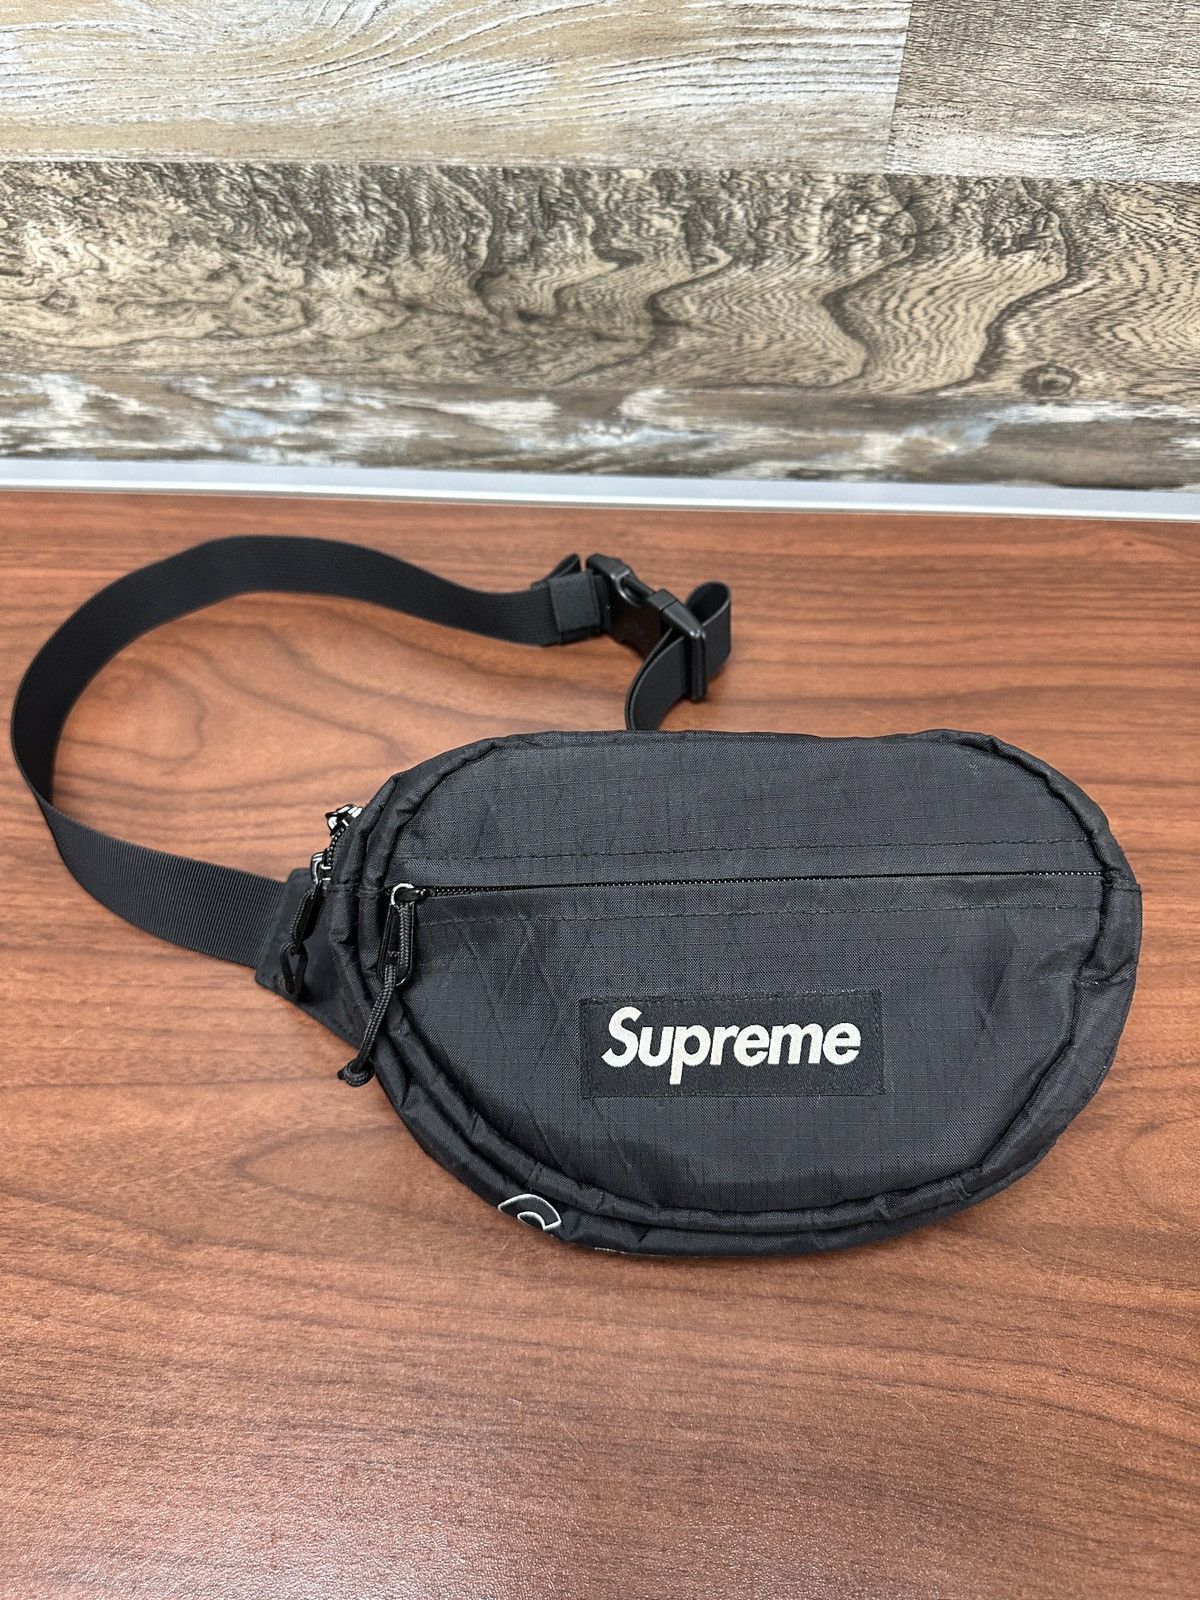 Supreme Supreme Black Waist Bag FW18 | Grailed